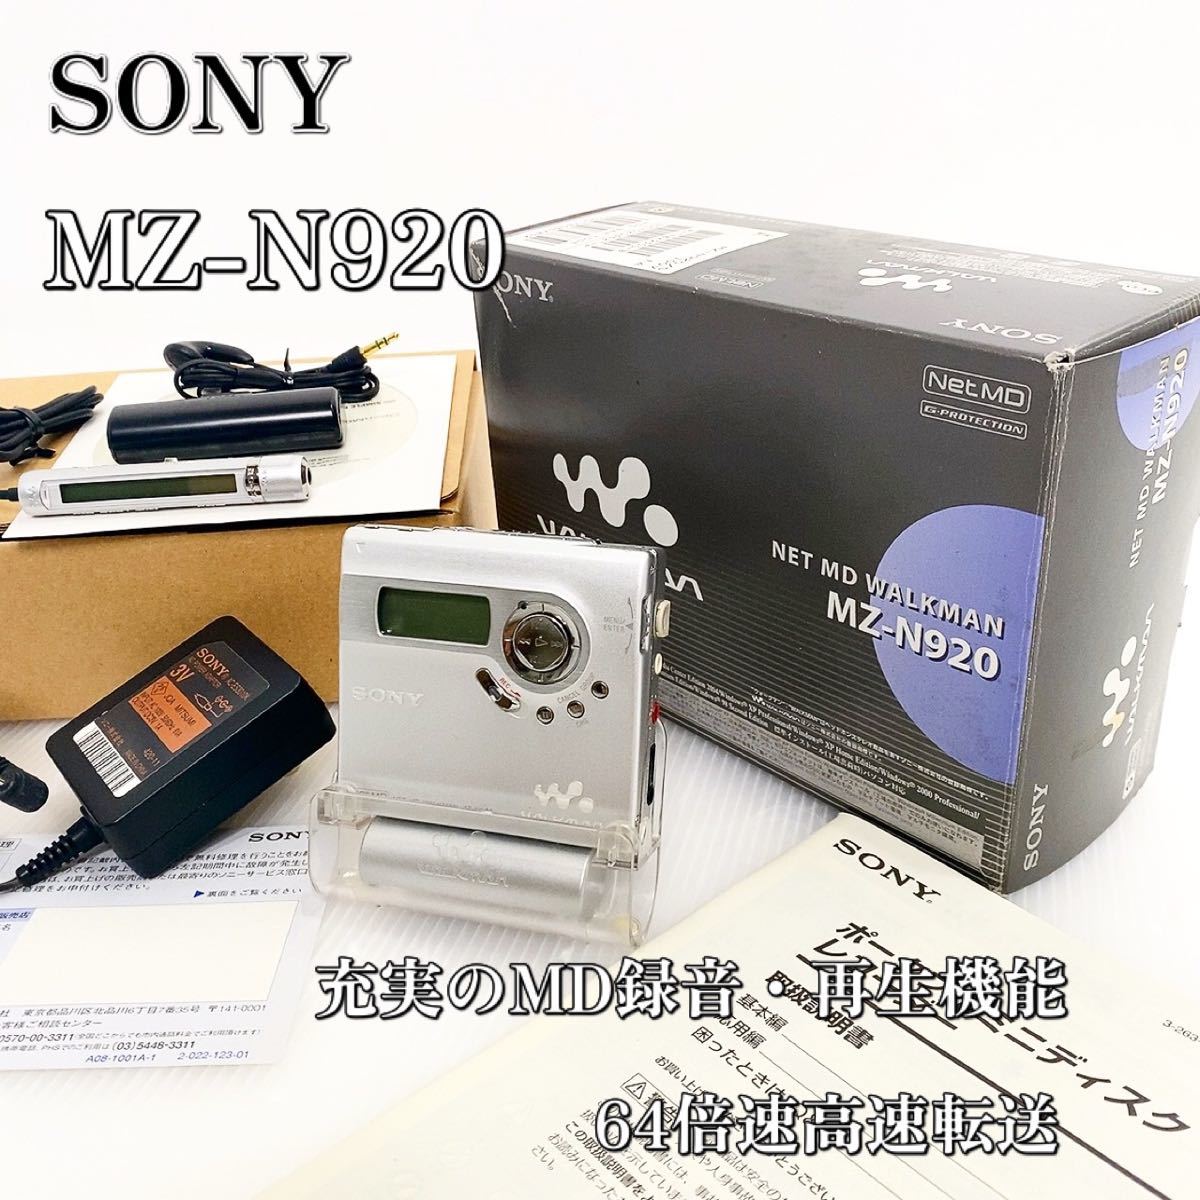 引出物 SONY MDウォークマン MZ-N920 S lokx.lk